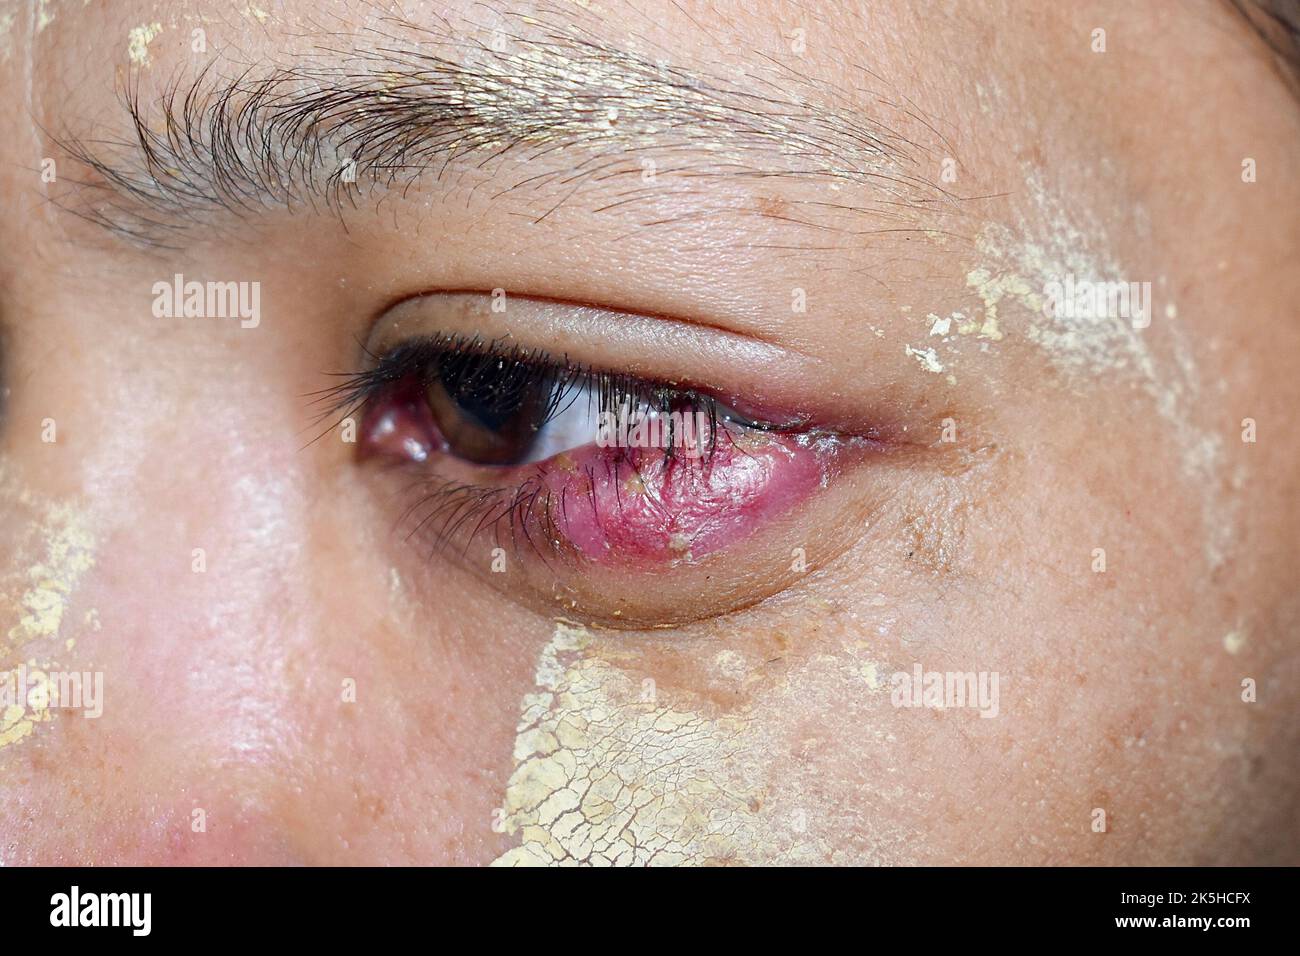 Geschwollenes unteres Augenlid der jungen asiatischen Frau. Sie kann durch Blepharitis, Sties, Allergien oder Chalazion verursacht werden. Stockfoto